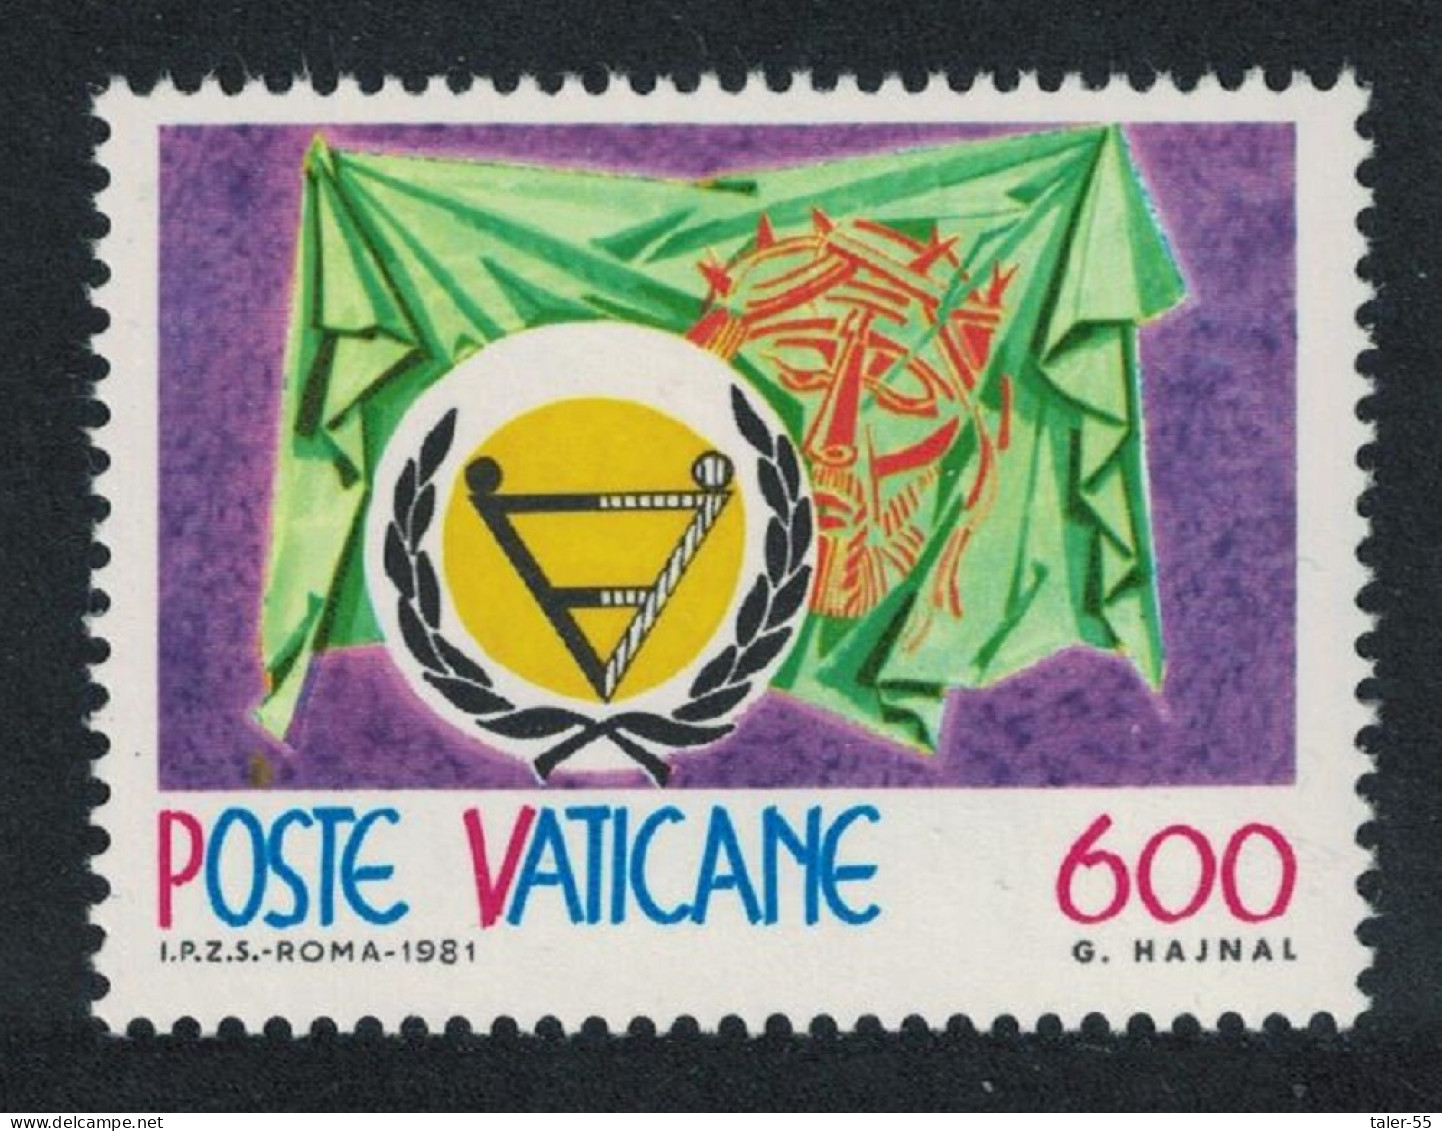 Vatican International Year Of Disabled Persons 1981 MNH SG#767 Sc#691 - Ongebruikt